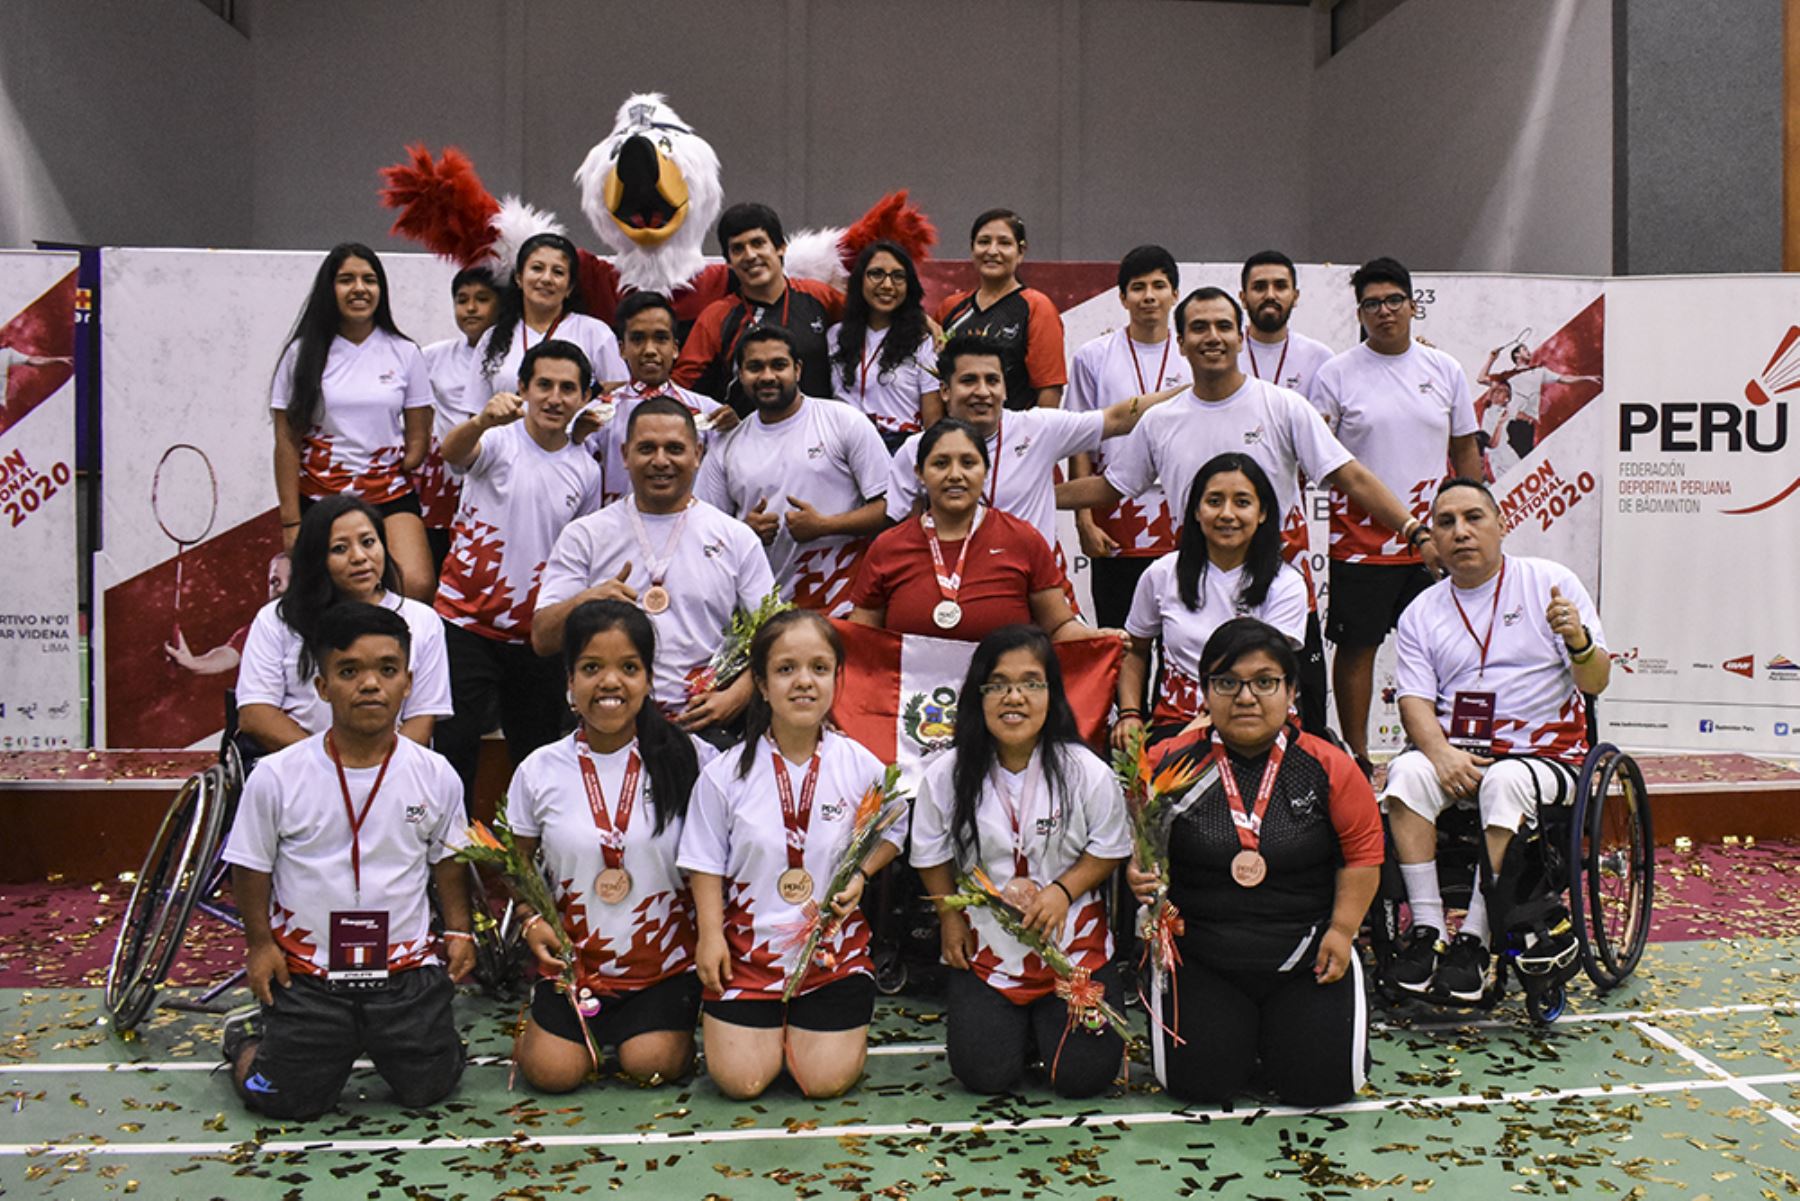 La selección peruana de parabadminton conquistó 10 medallas (tres de oro, tres de plata y cuatro de bronce) en el penúltimo certamen clasificatorio rumbo a los Juegos Paralímpicos Tokio 2020